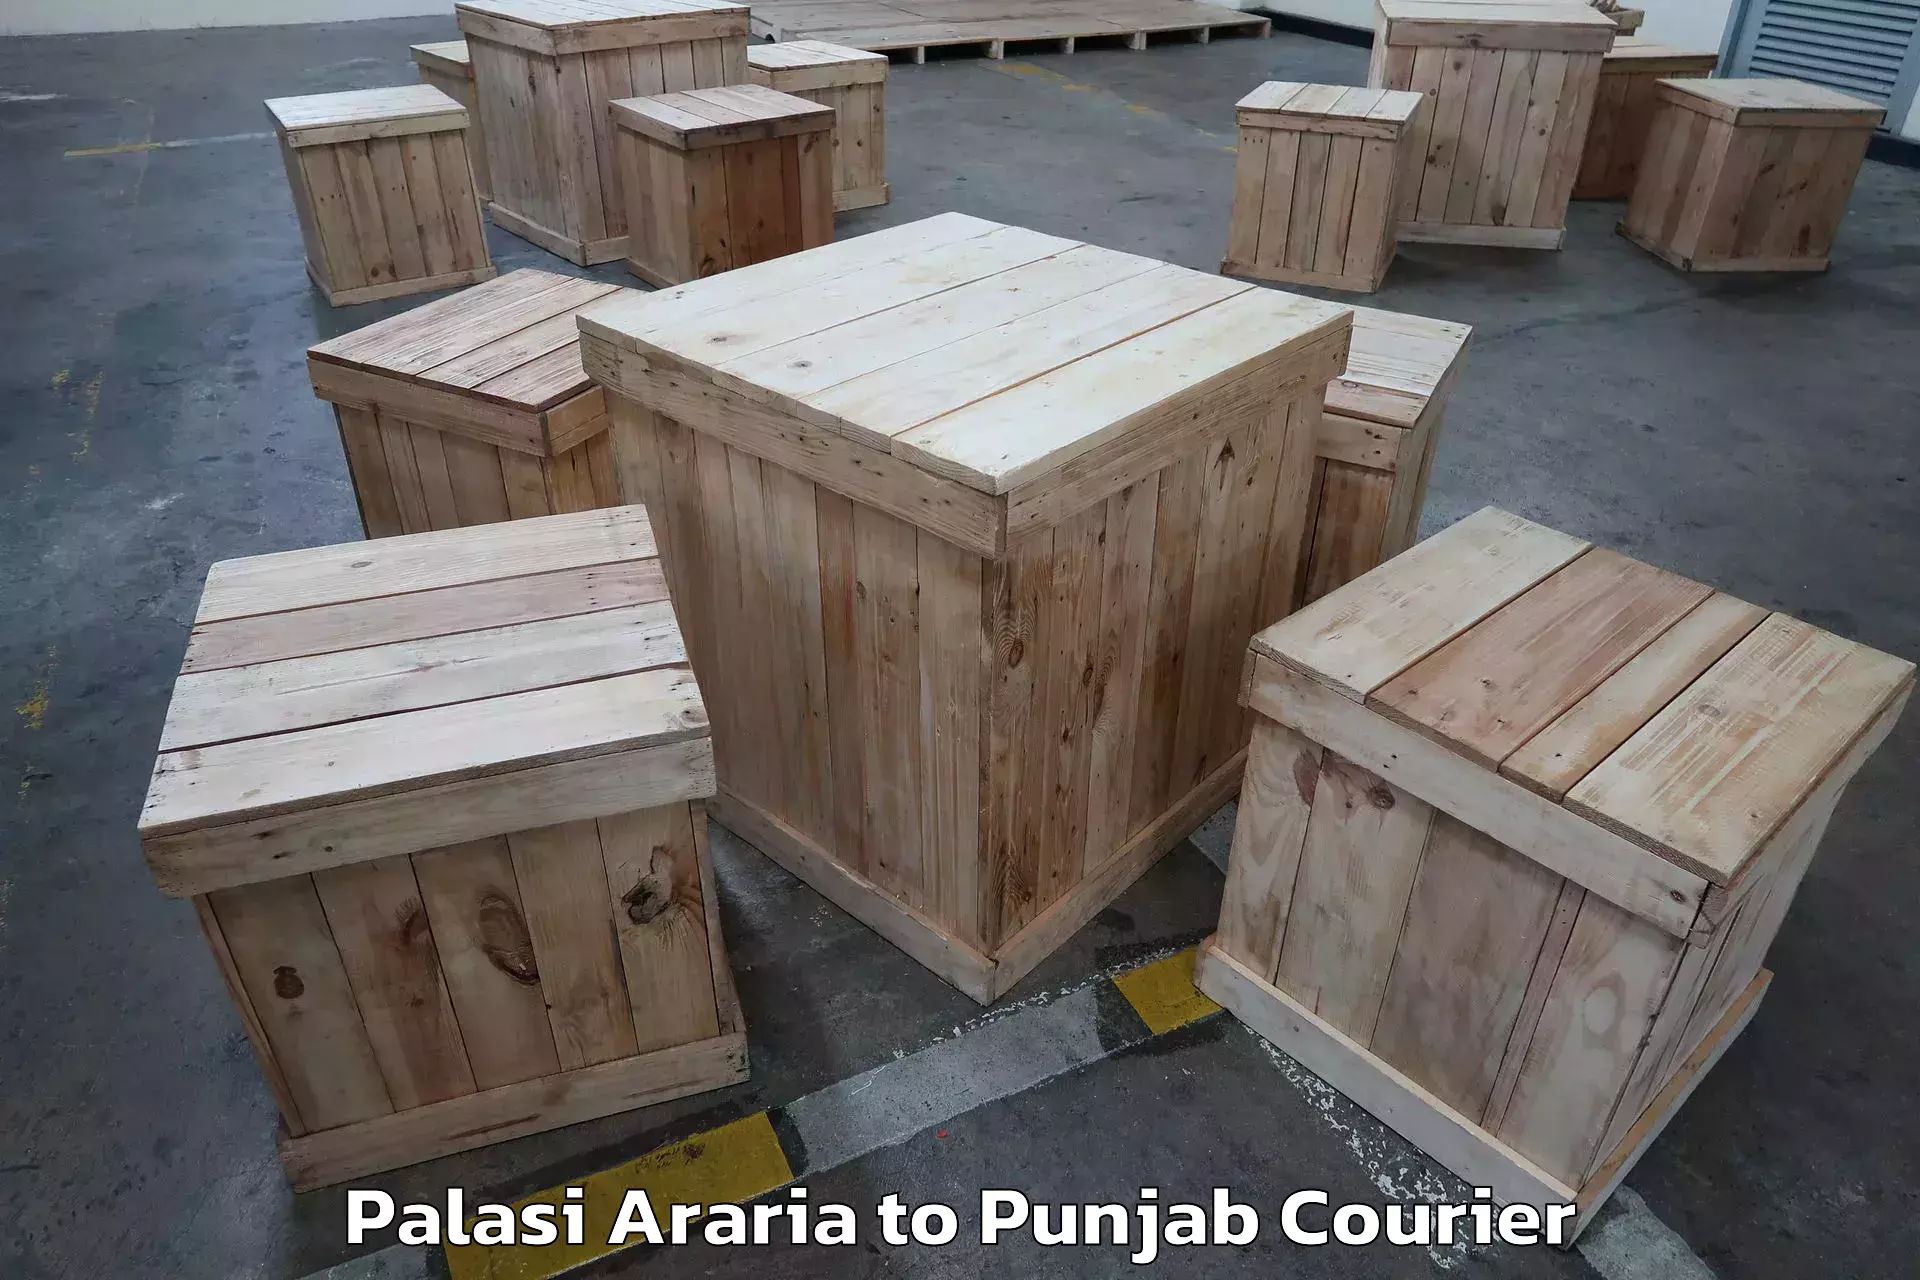 Furniture moving experts Palasi Araria to Machhiwara